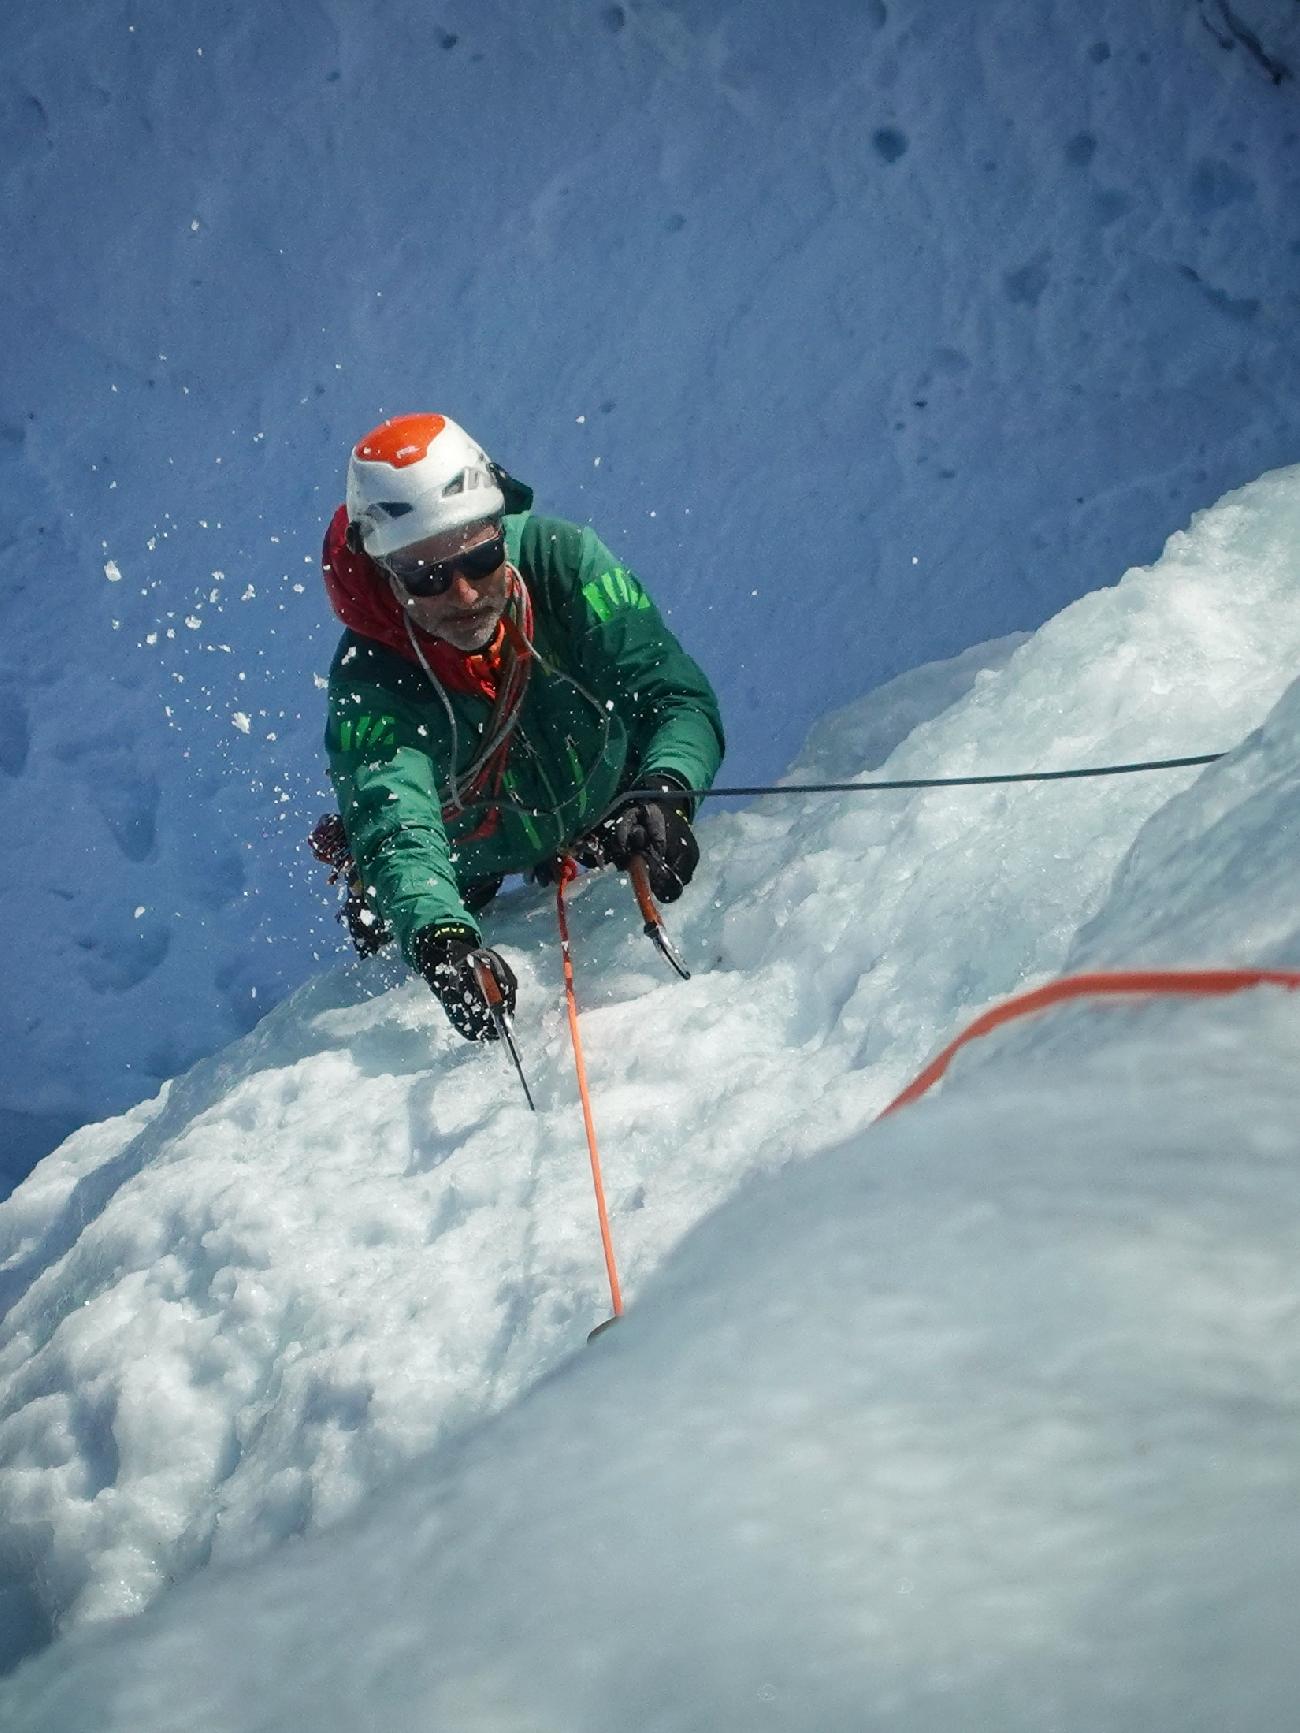 Norvegia cascate di ghiaccio, Alessandro Ferrari, Giovanni Zaccaria